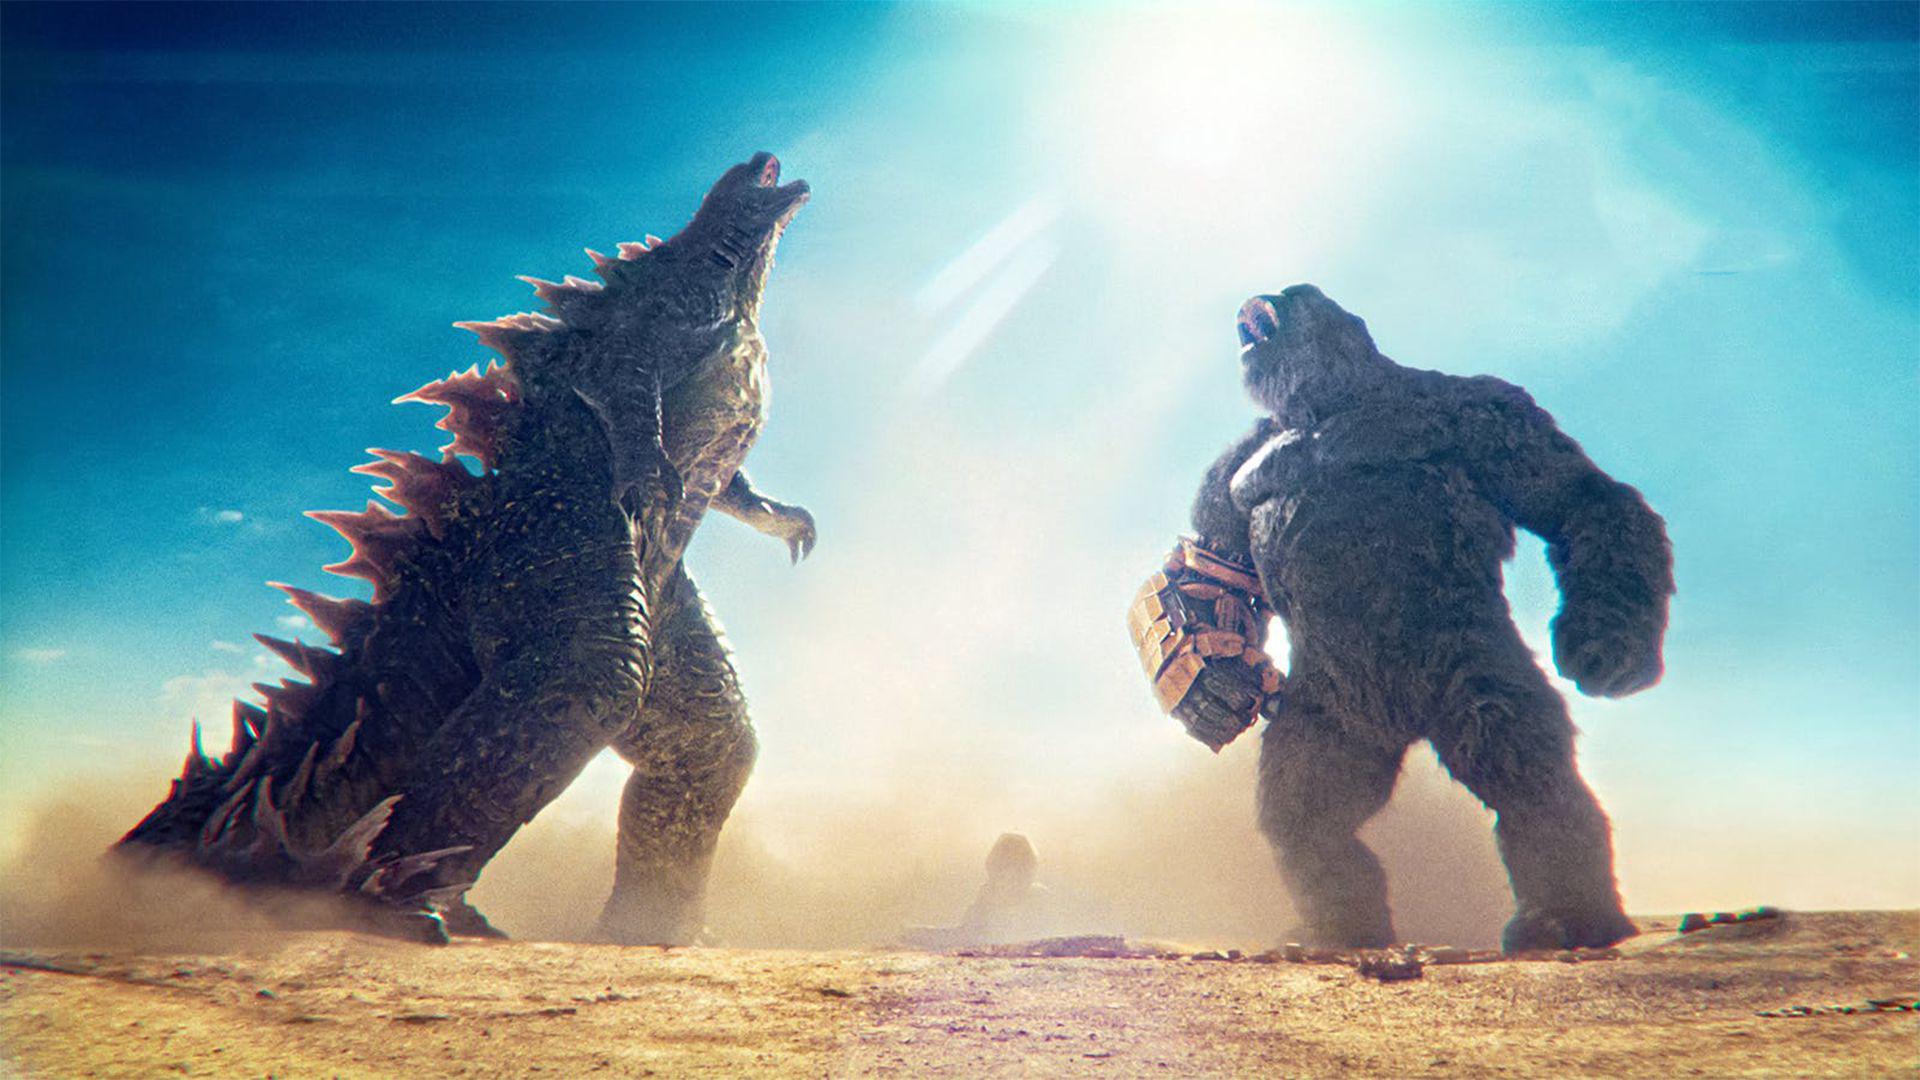 تریلر جدید فیلم Godzilla x Kong بازگشت غیر منتظره یک هیولا را فاش کرد    زومجی